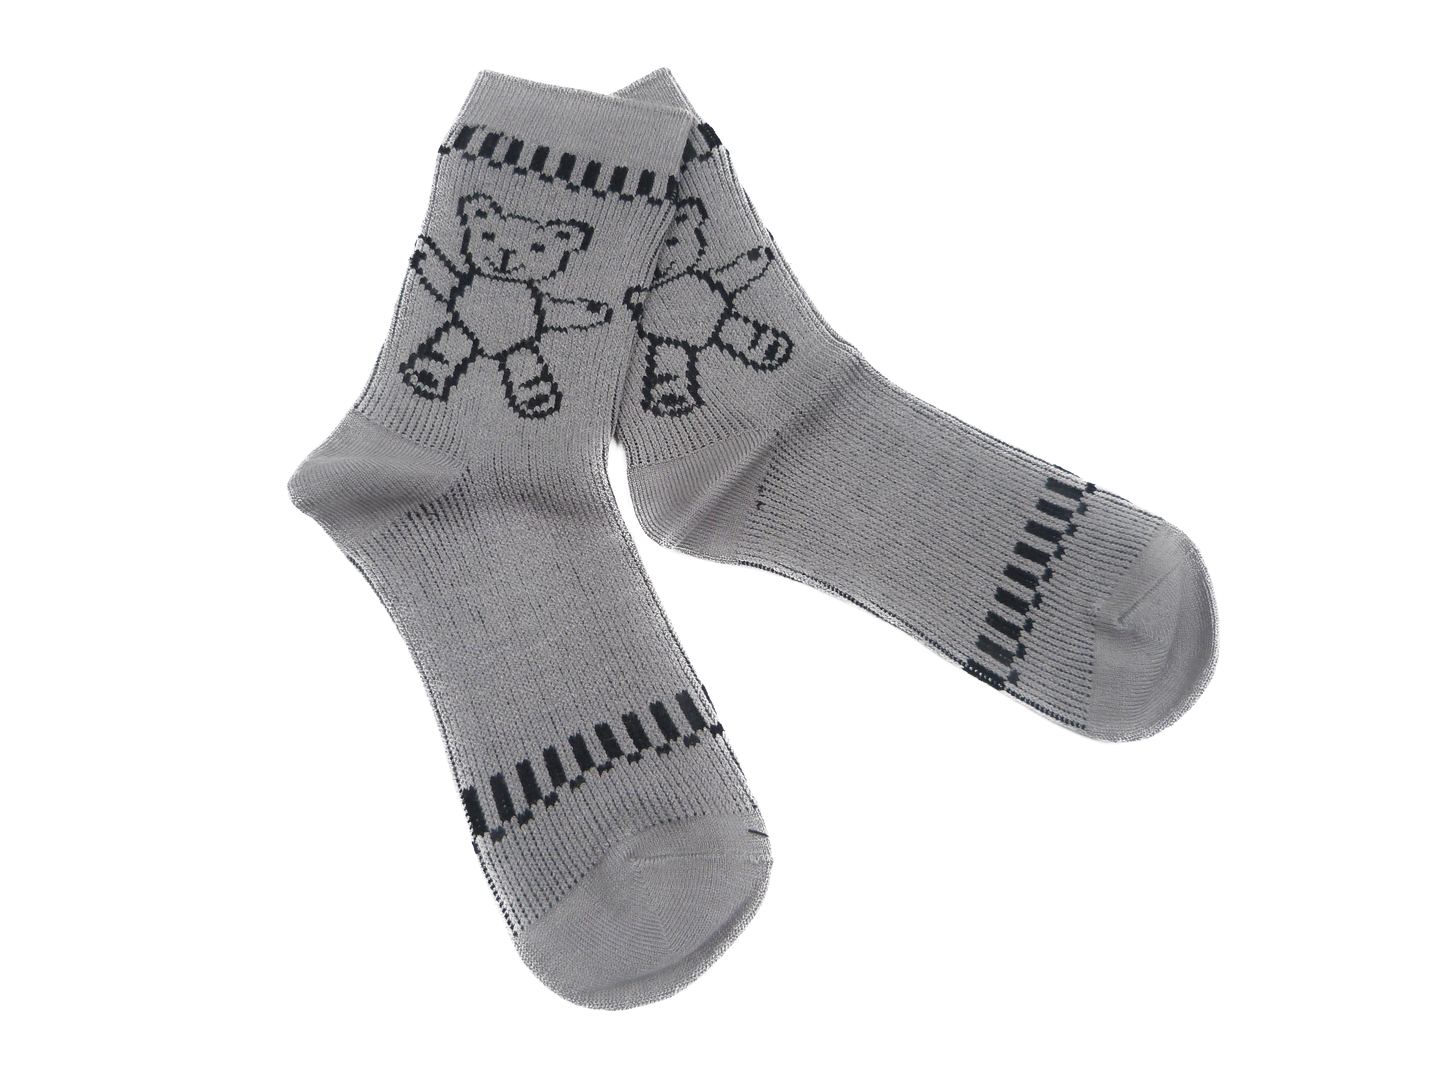 Cute Bear Socks